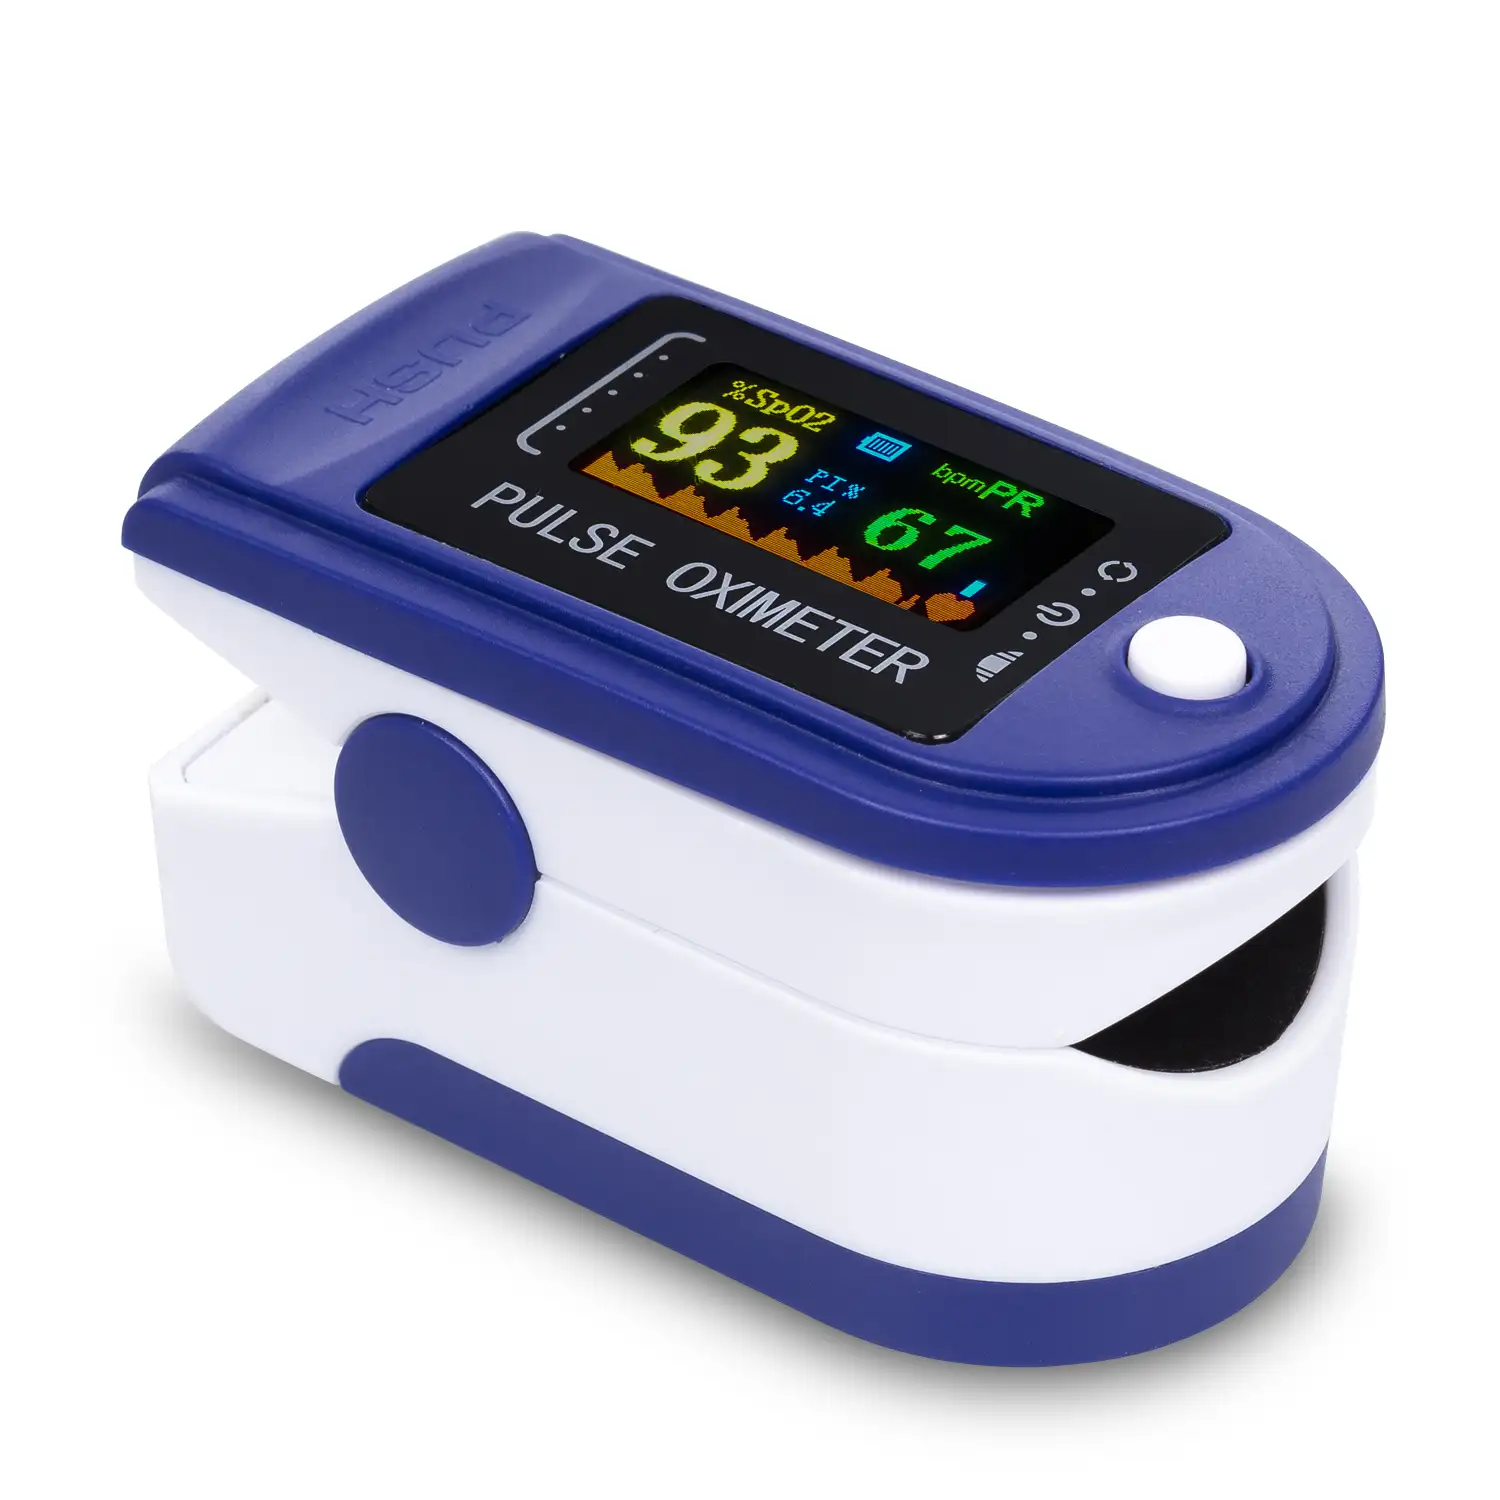 Pulsómetro digital con monitor cardiaco inalámbrico, oxímetro y pantalla a color.